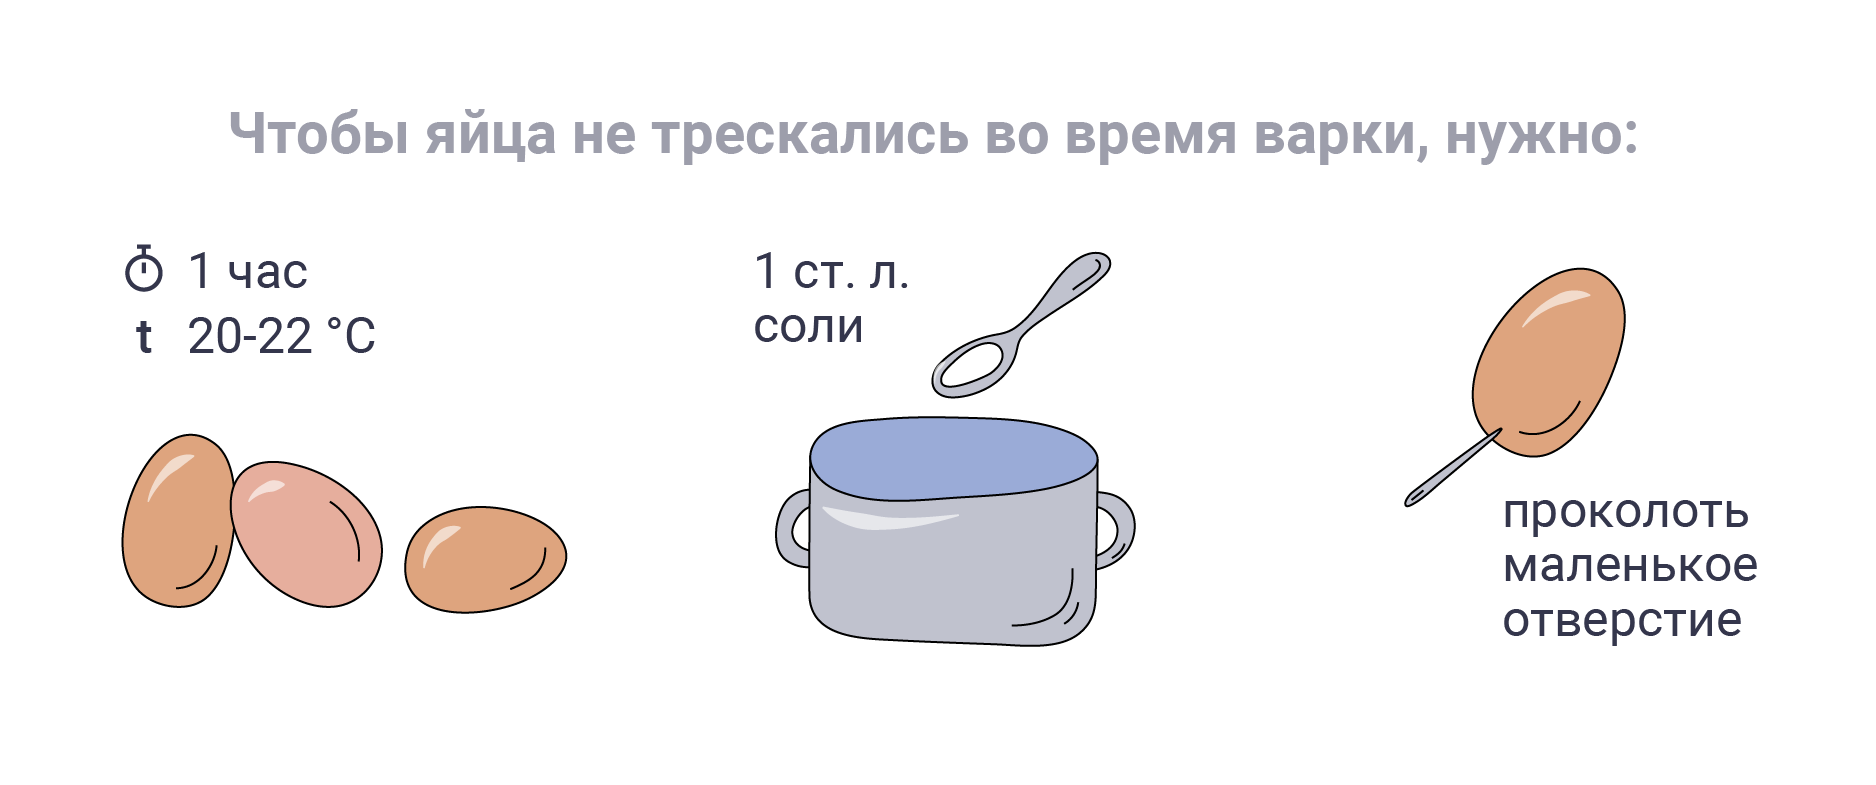 Как сварить яйца на Пасху, чтобы они были крепкими: пошаговая инструкция. Иллюстрация © LIFE